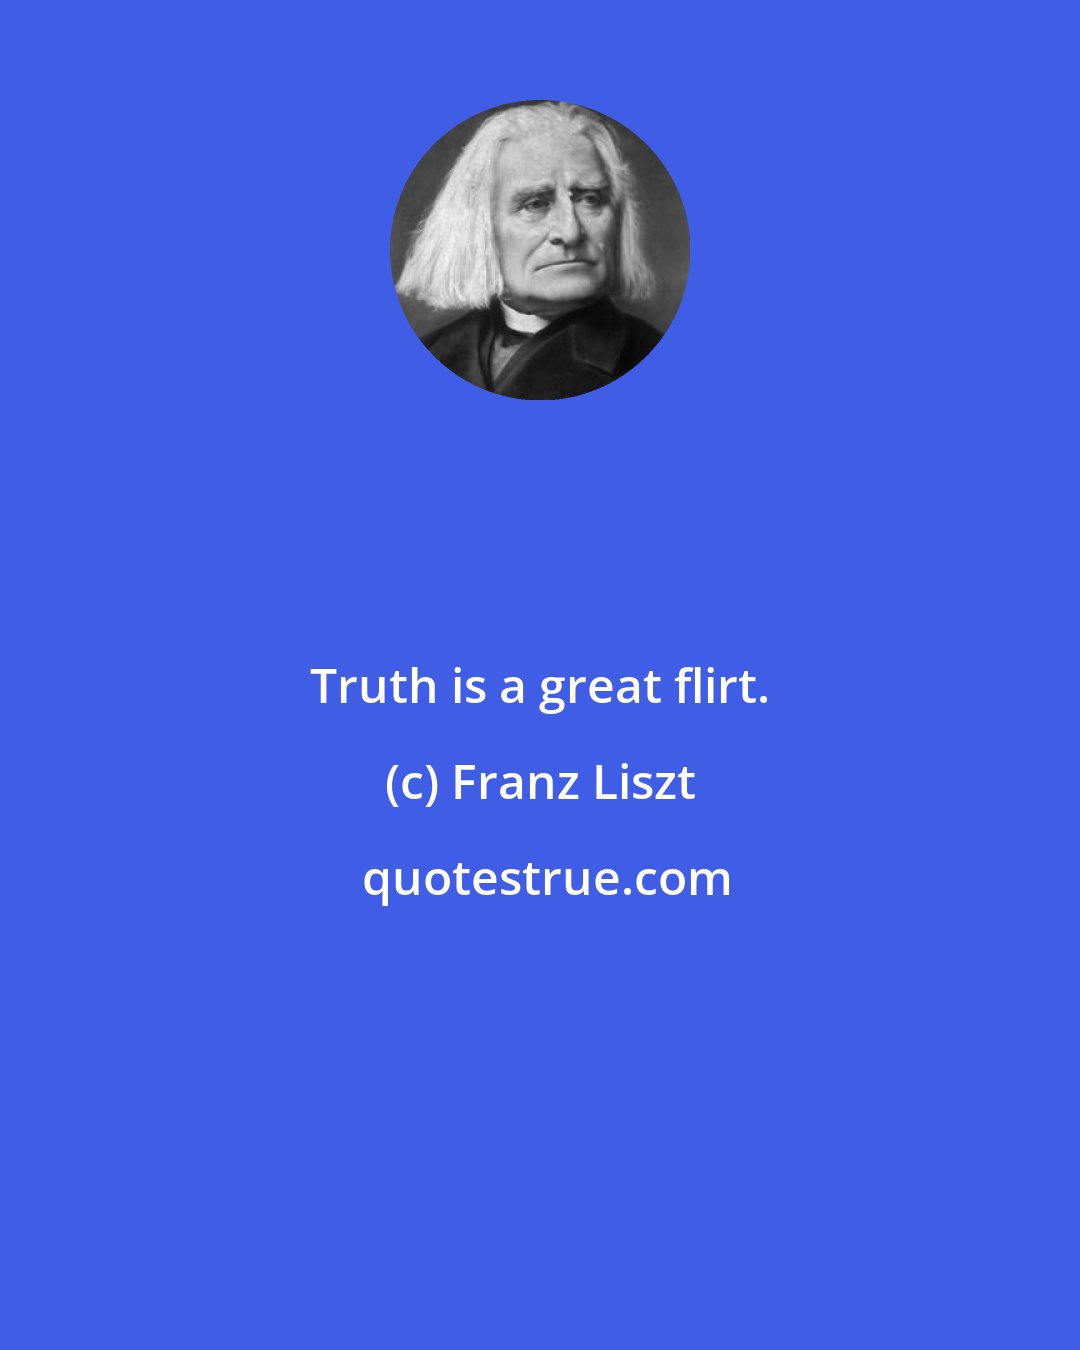 Franz Liszt: Truth is a great flirt.